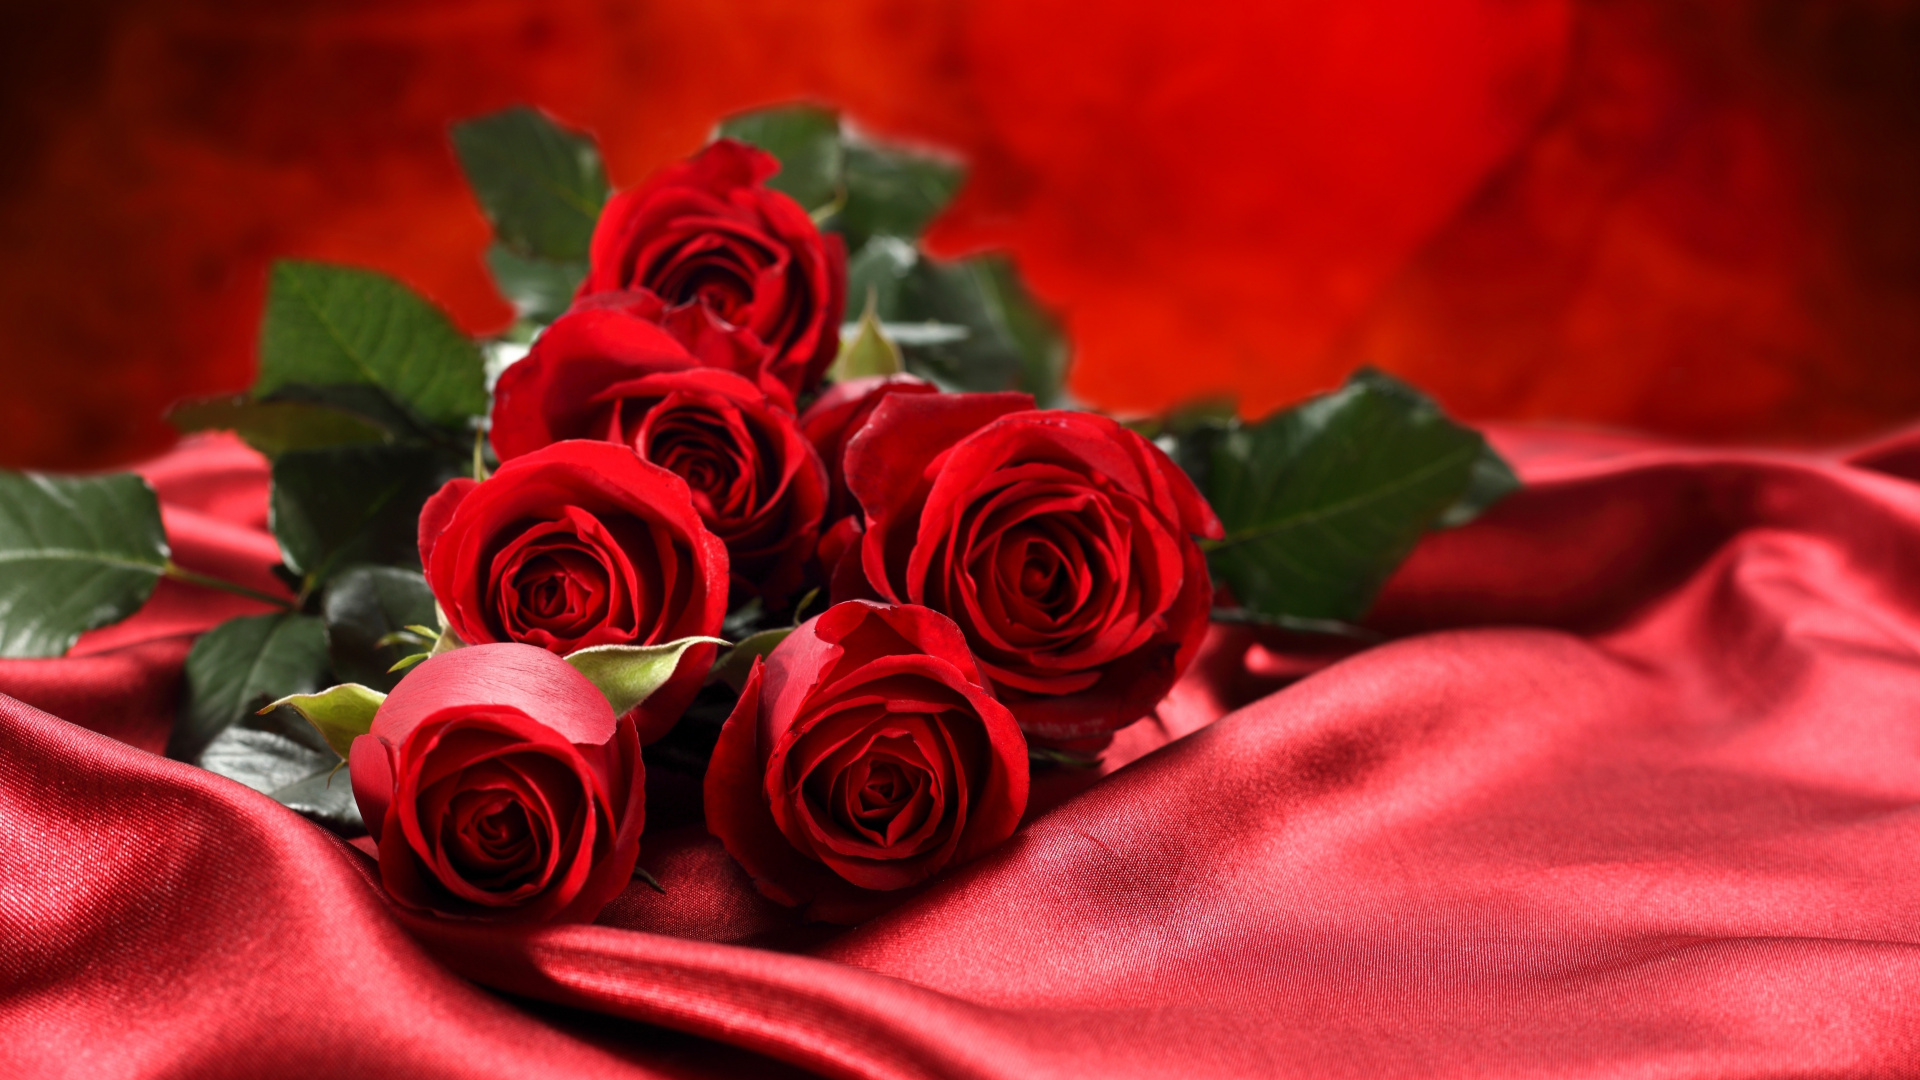 Обои Роза, цветочный букет, сад роз, красный цвет, семья Роуз в разрешении 1920x1080